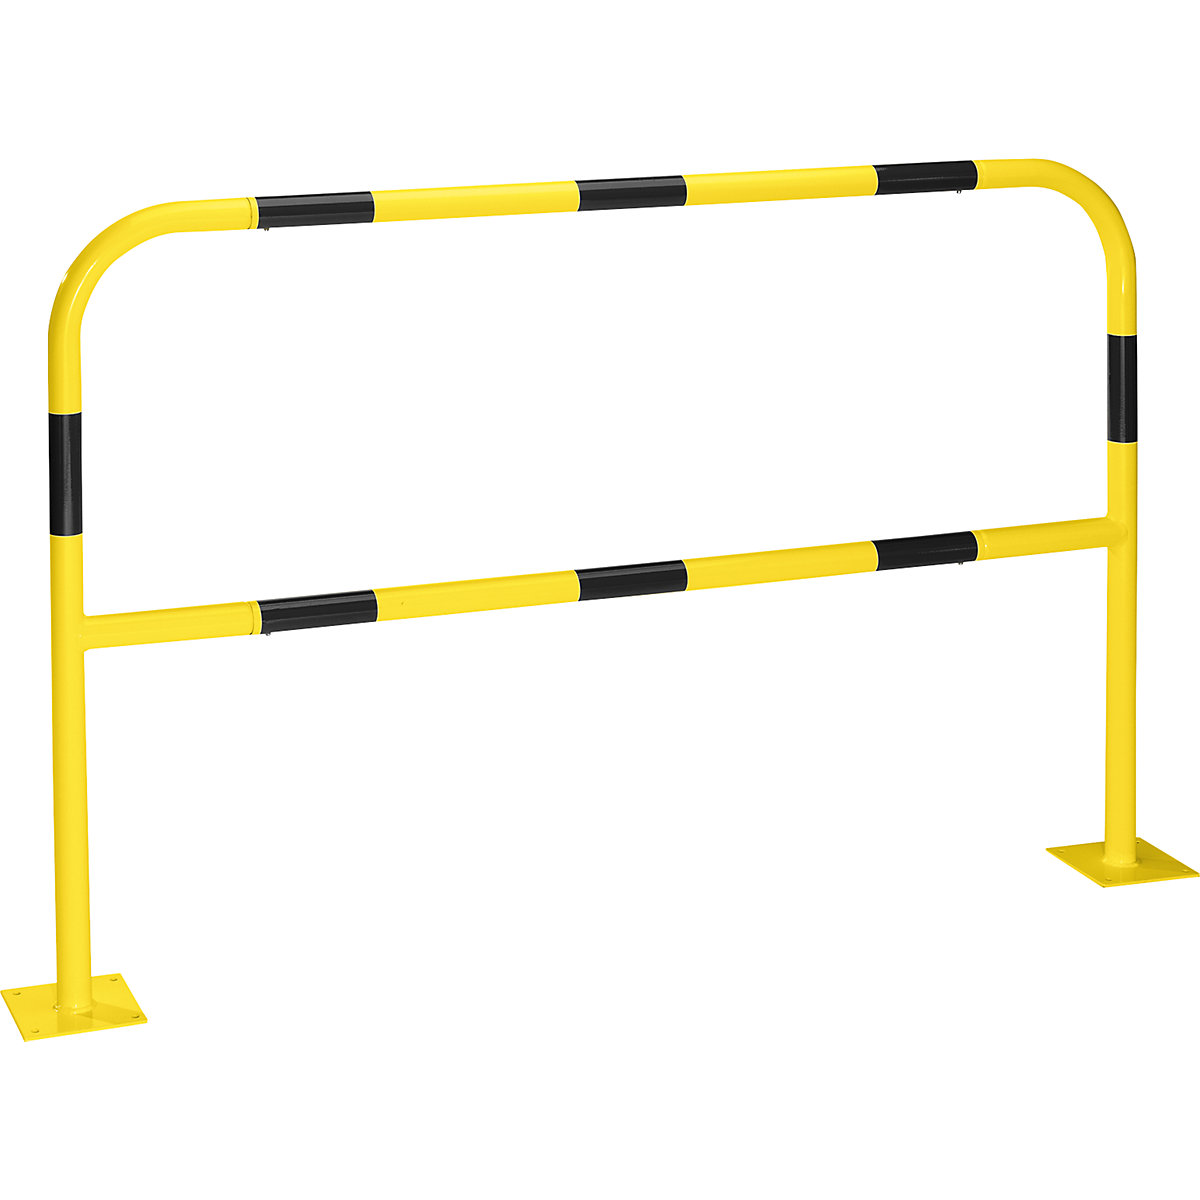 Arco de segurança para zonas de perigo, para fixar por buchas, amarelo / preto, largura 1500 mm-11